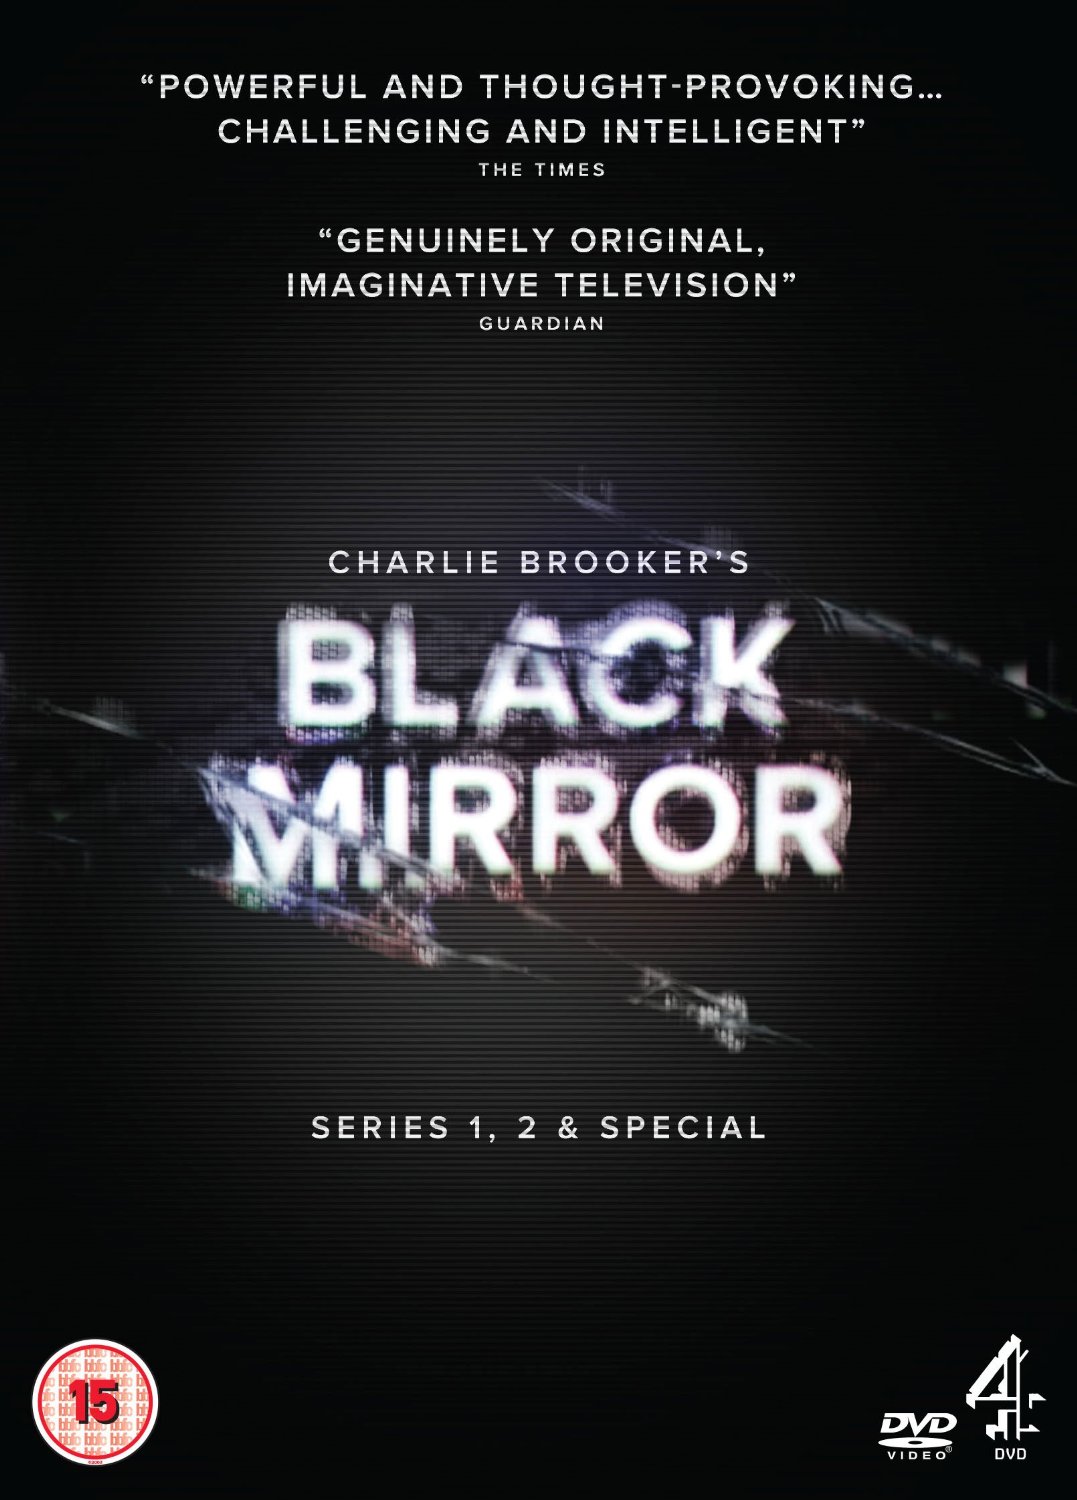 Black Mirror: Season 1